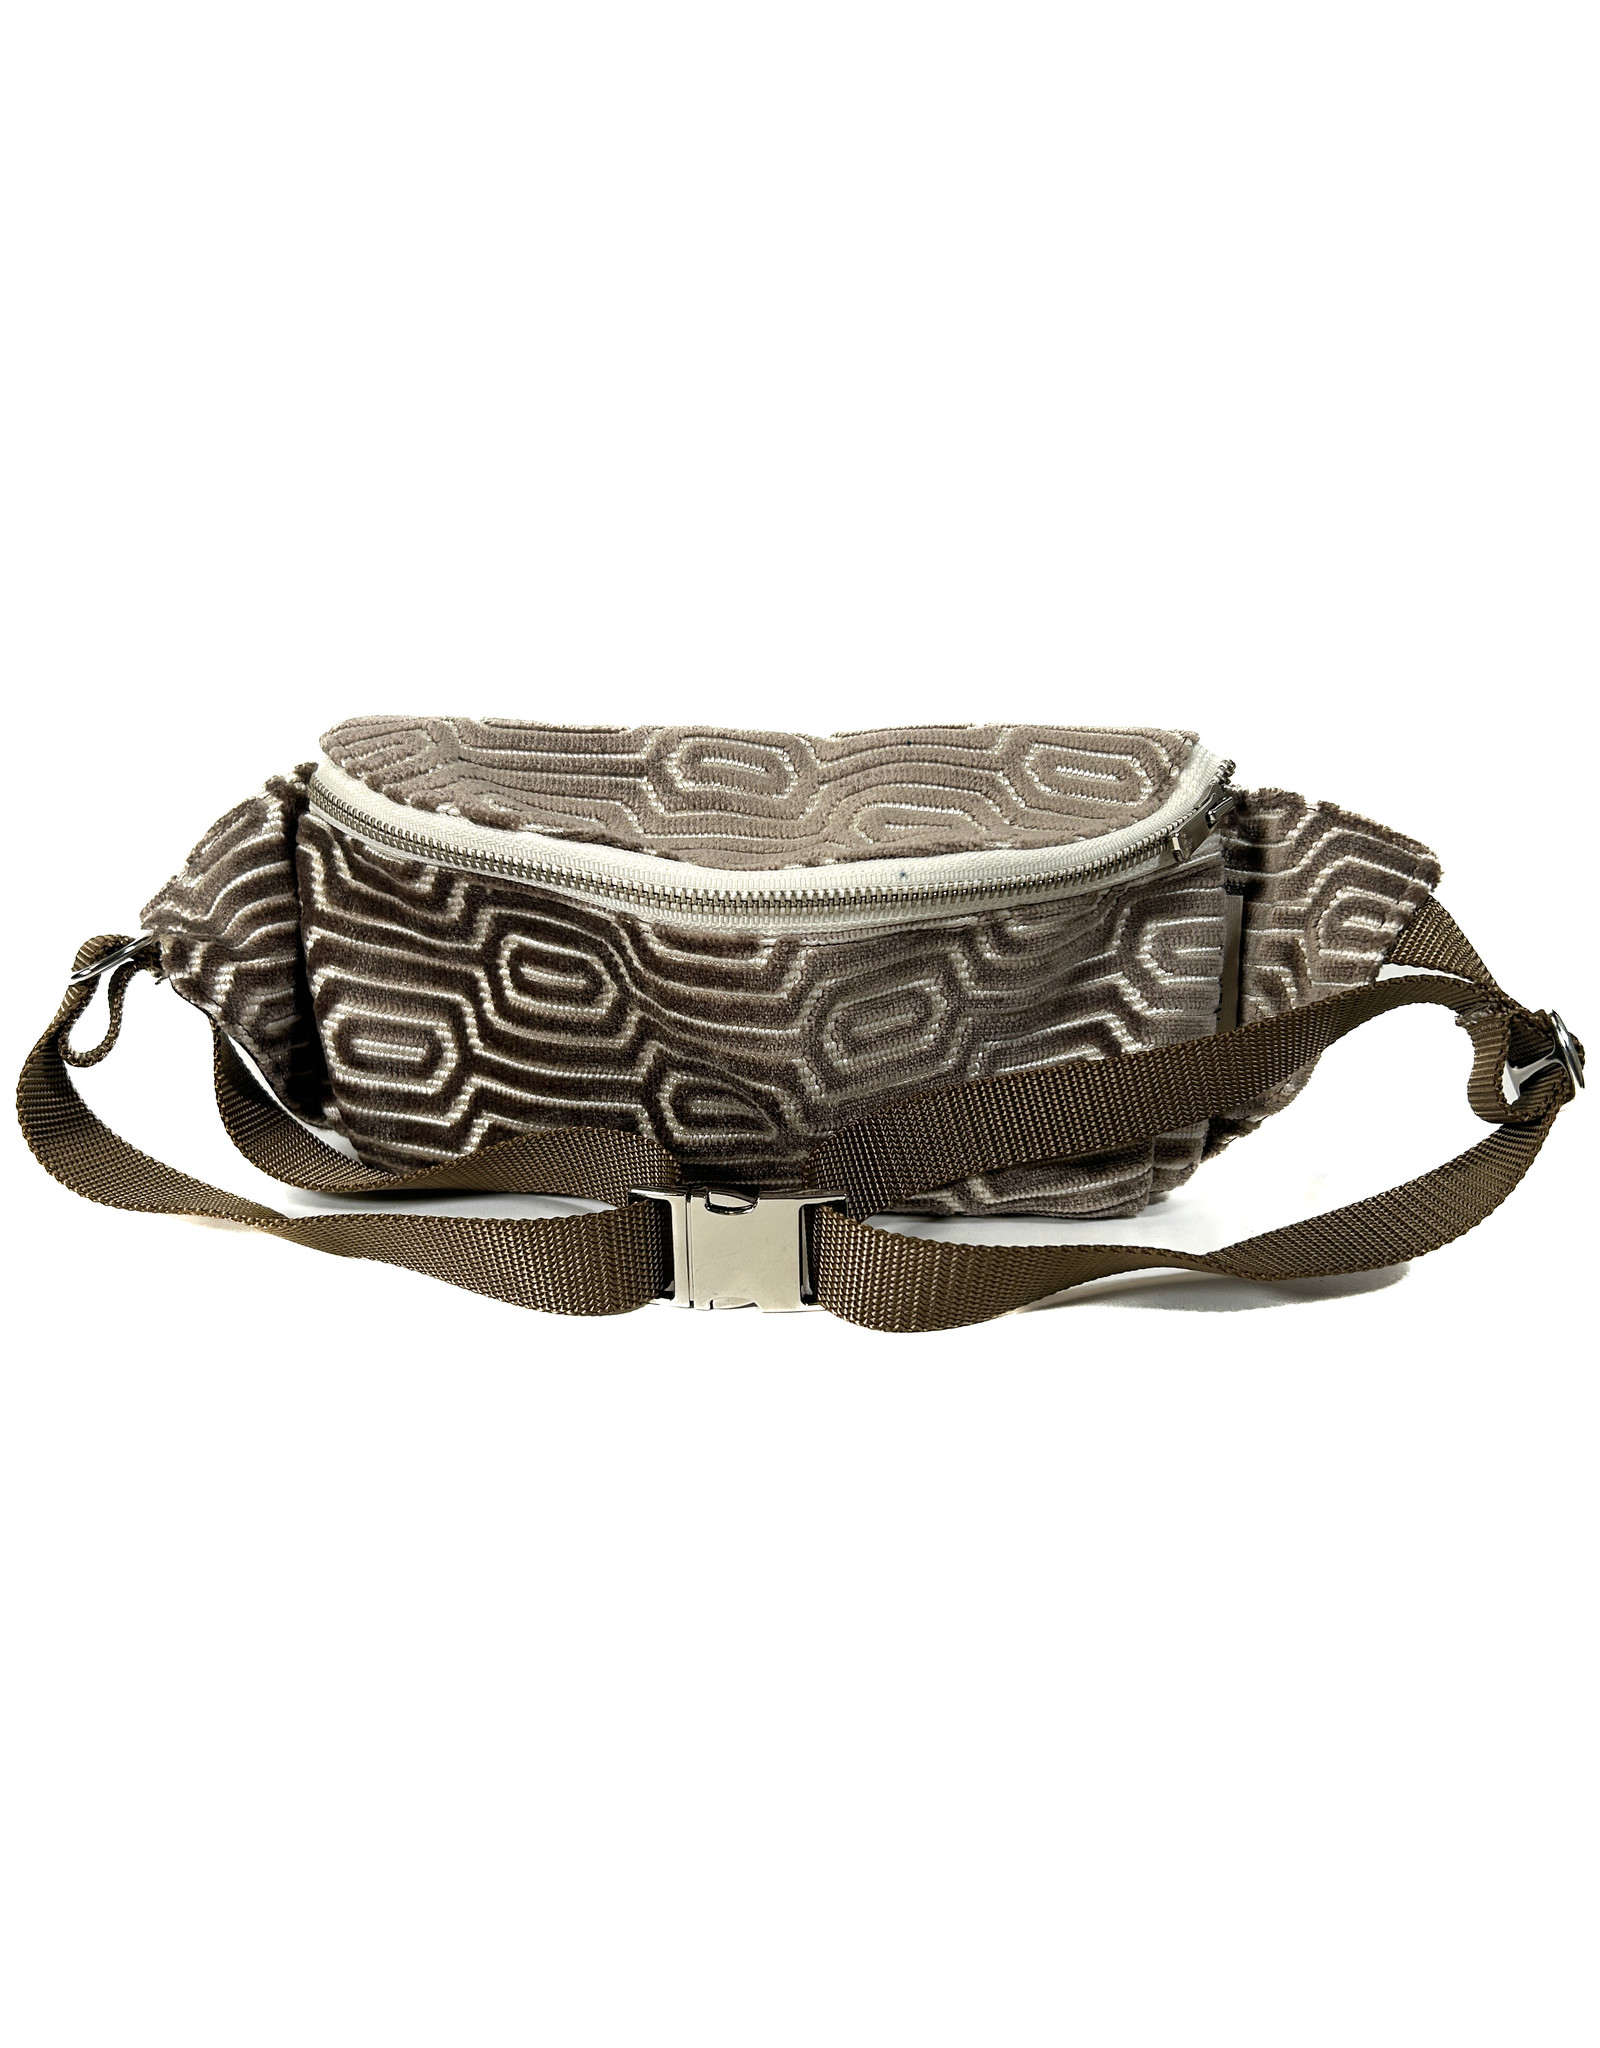 Buy Used Designer Belt Bags - Bag Borrow or Steal